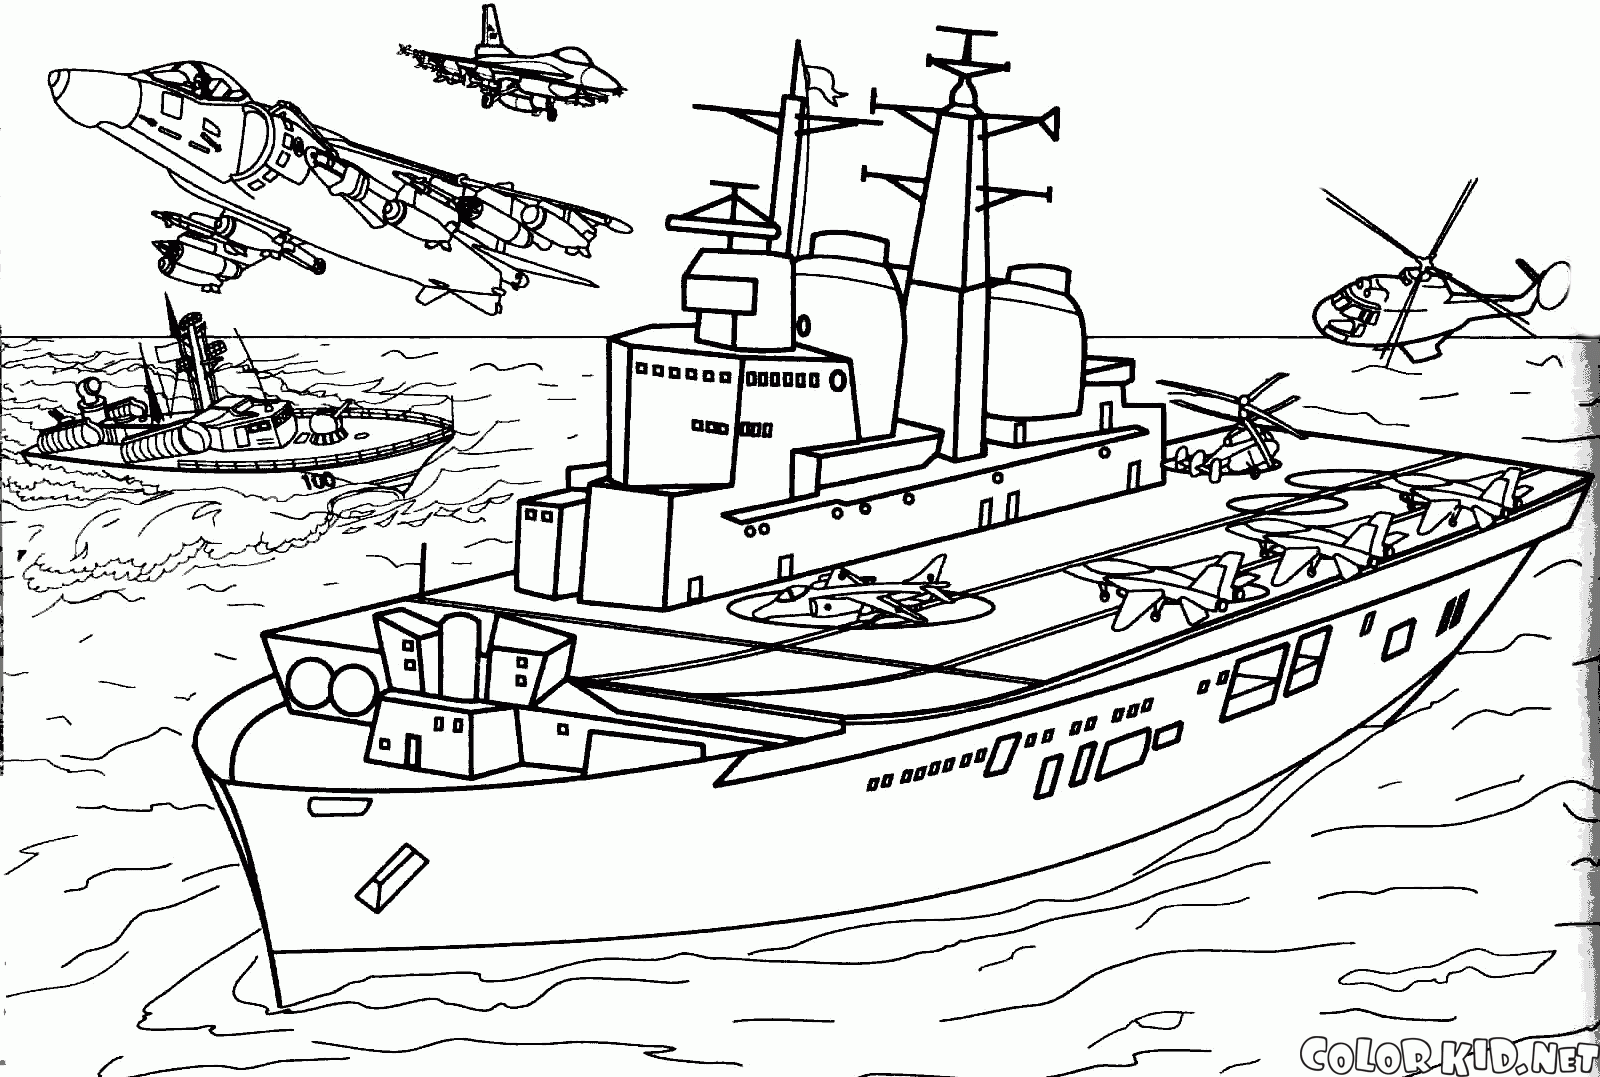 İngiliz Invincible uçak gemisi